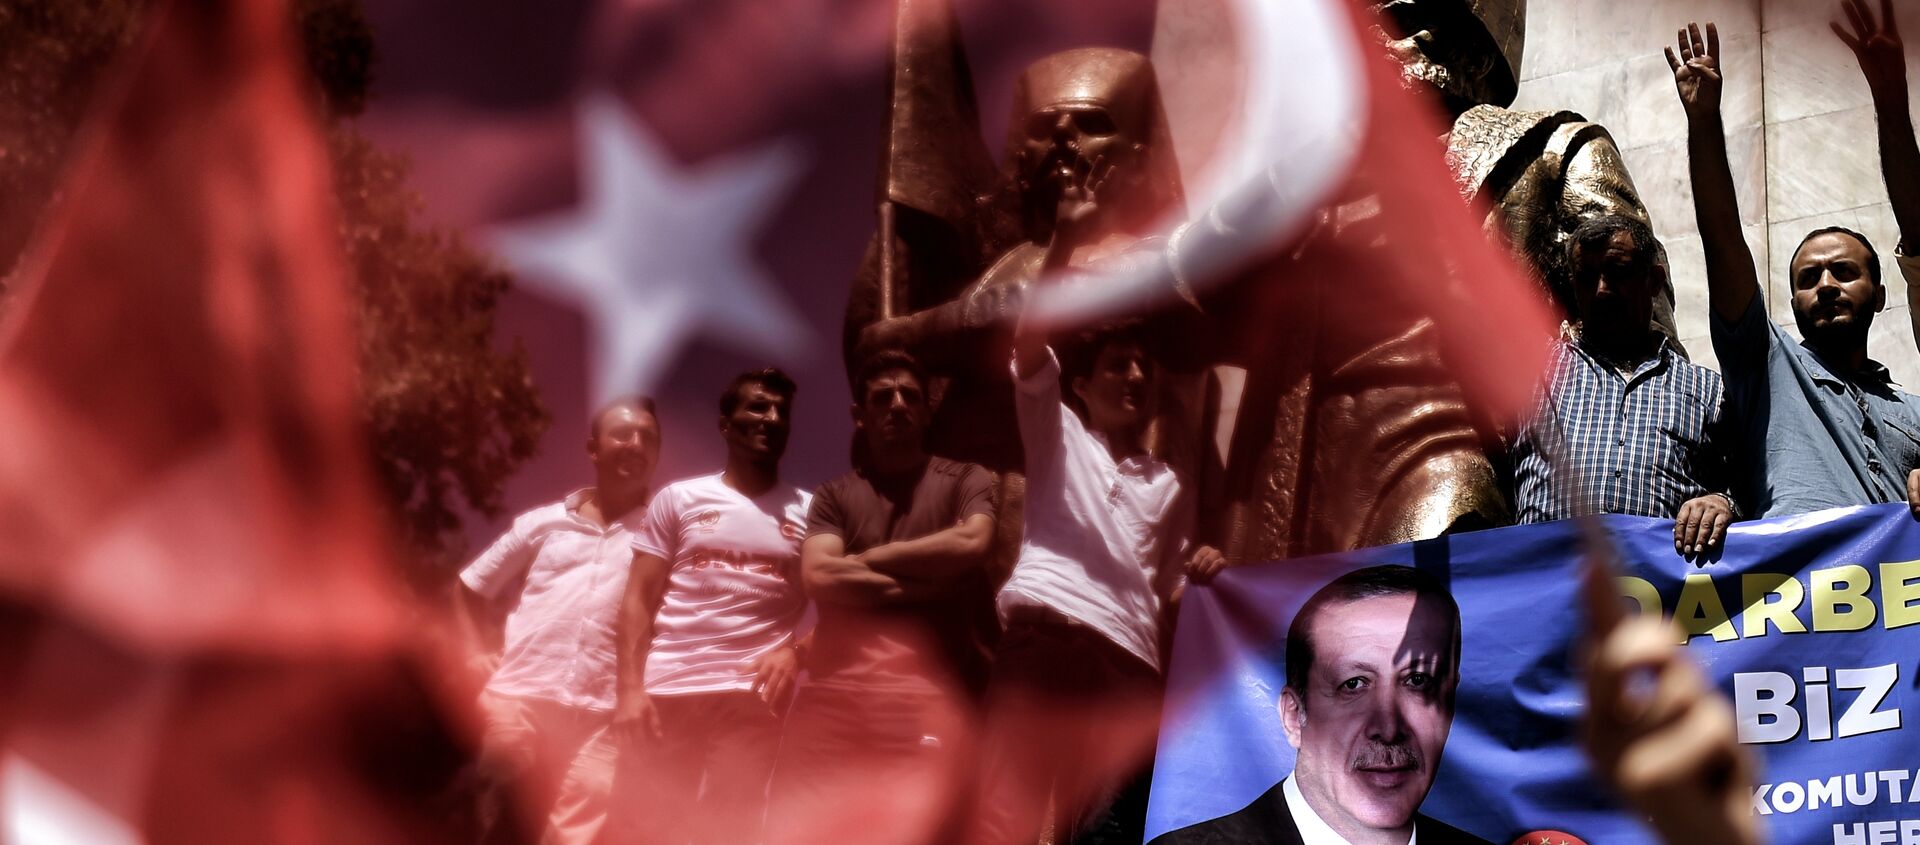 Erdoganove pristalice mašu turskim nacionalnim zastavama tokom mitinga na trgu Taksim u Istanbulu, 18. jula - Sputnik Srbija, 1920, 15.05.2018